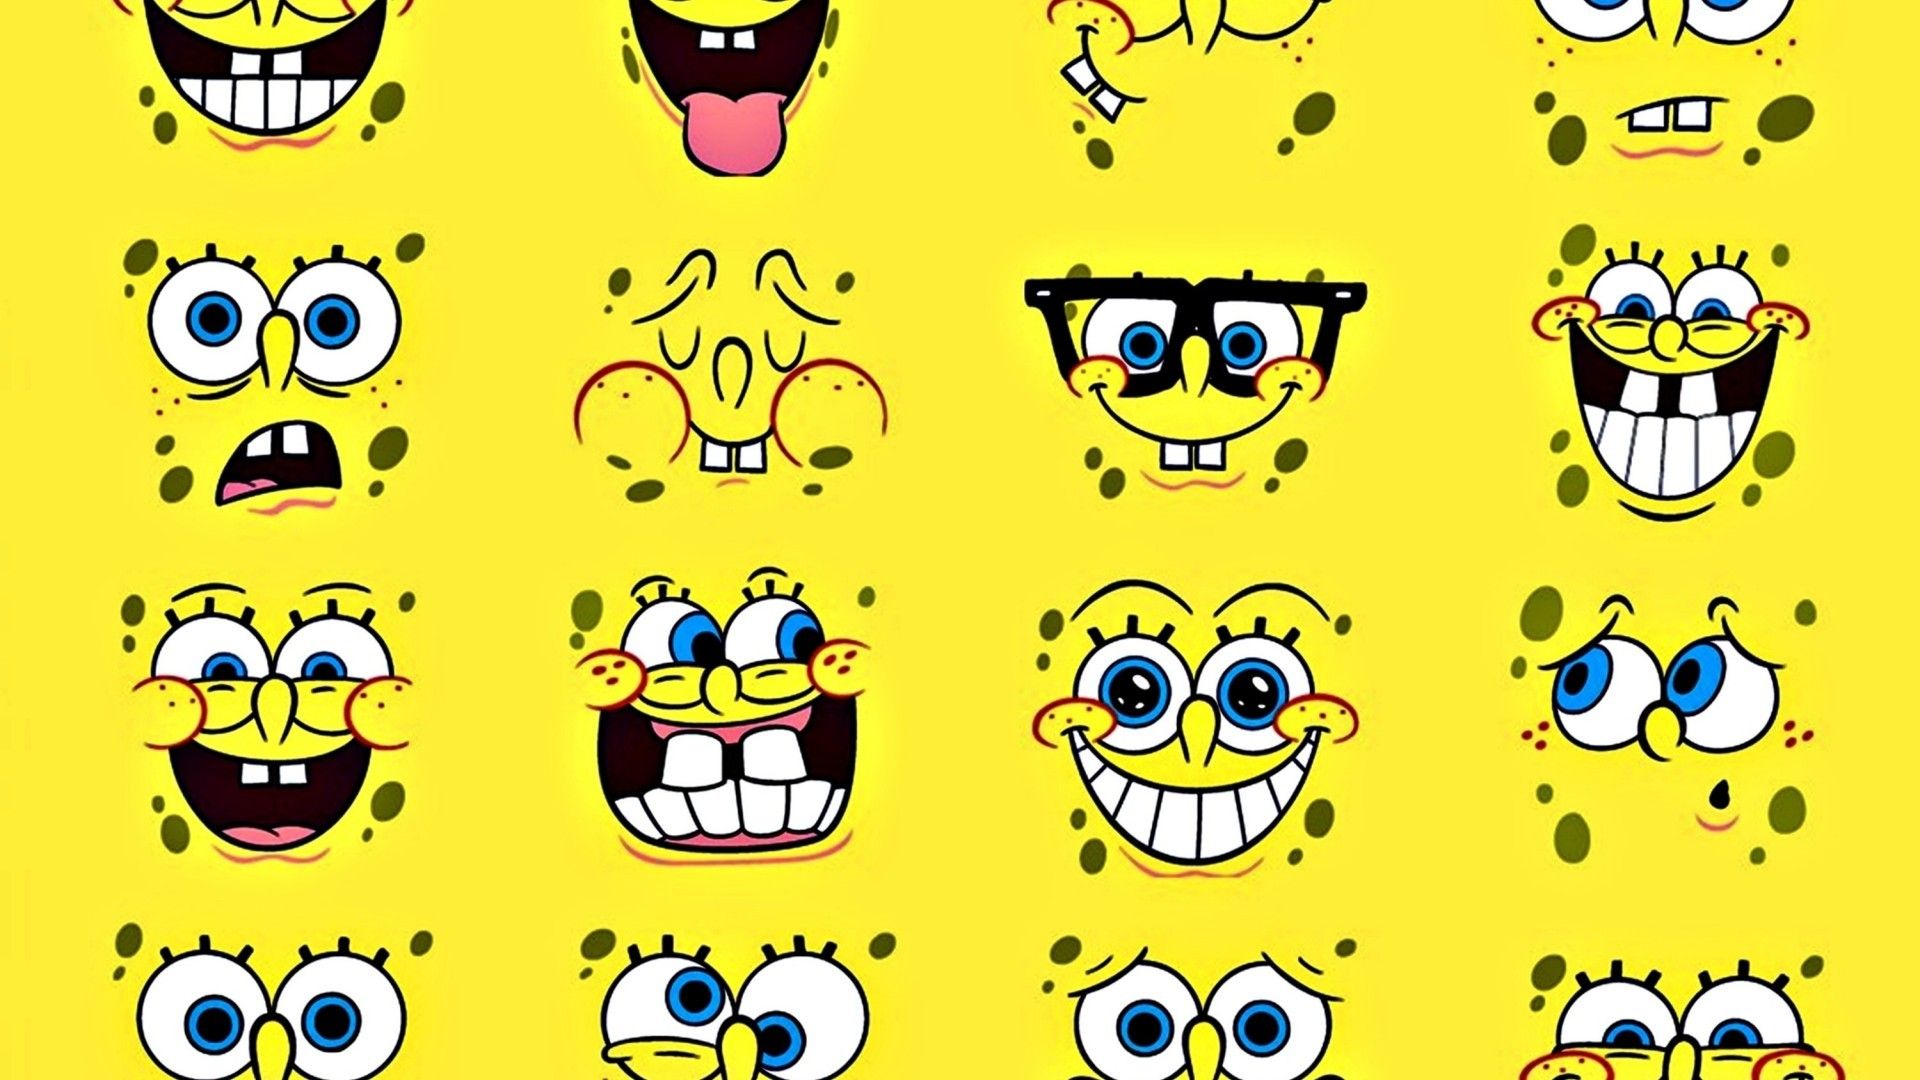 Spongebob squarepants face pack - SpongeBob